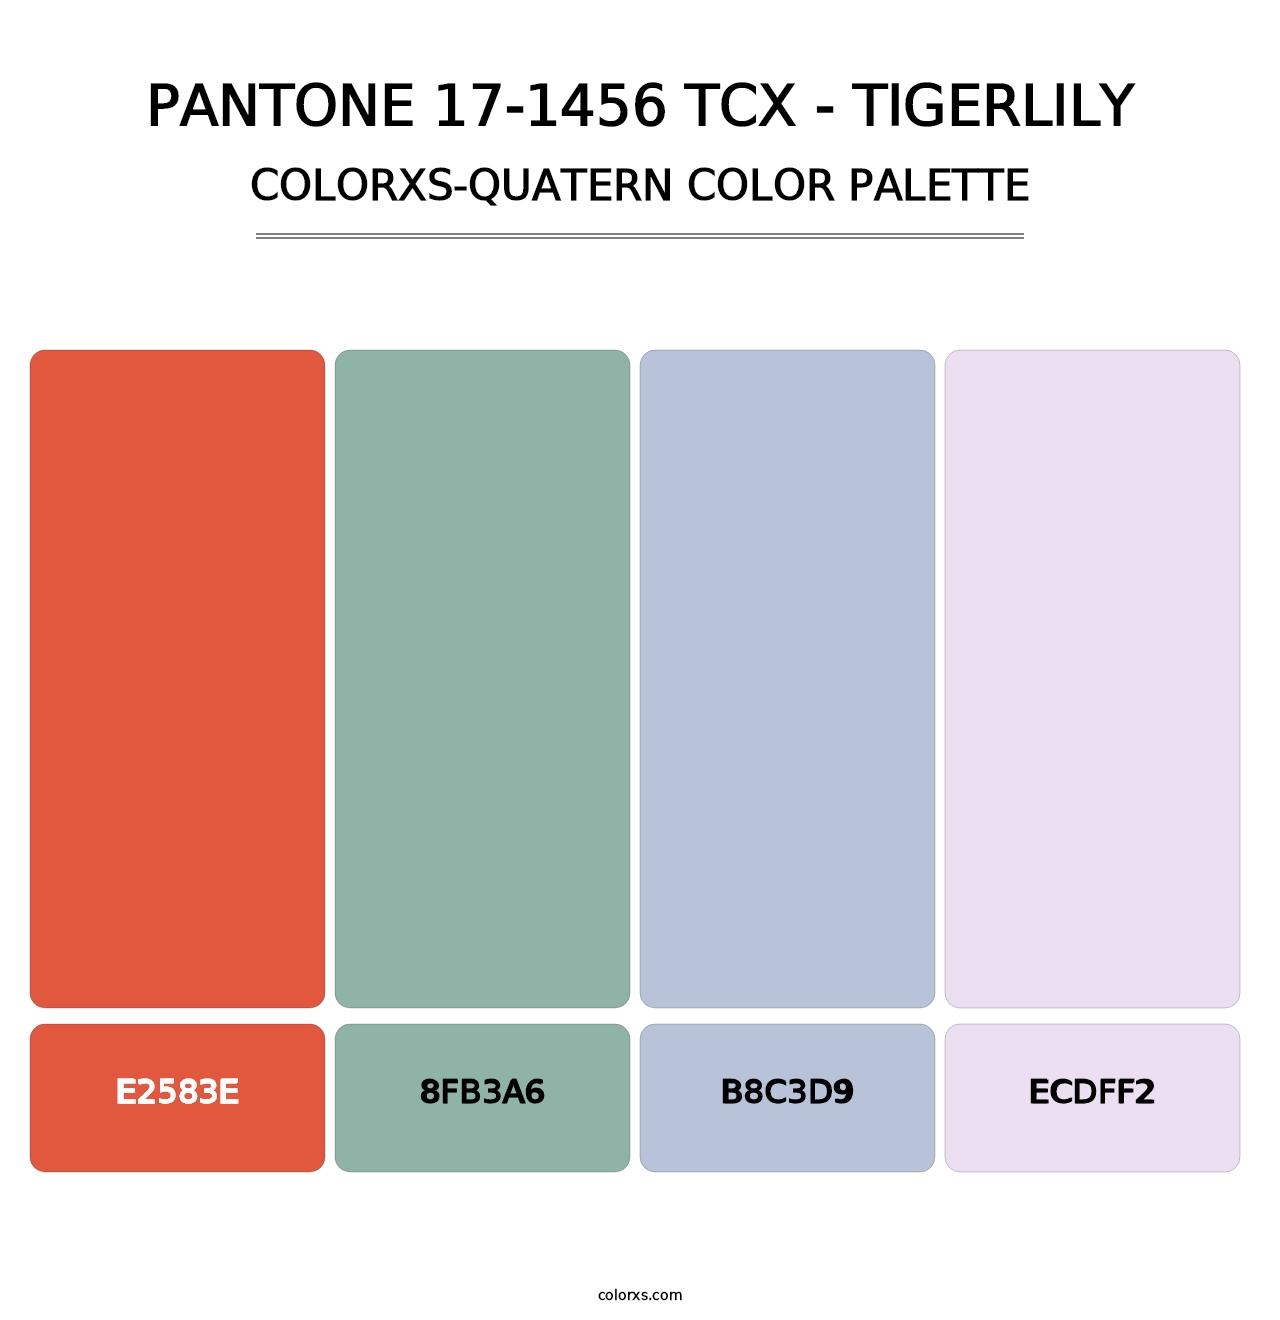 PANTONE 17-1456 TCX - Tigerlily - Colorxs Quatern Palette